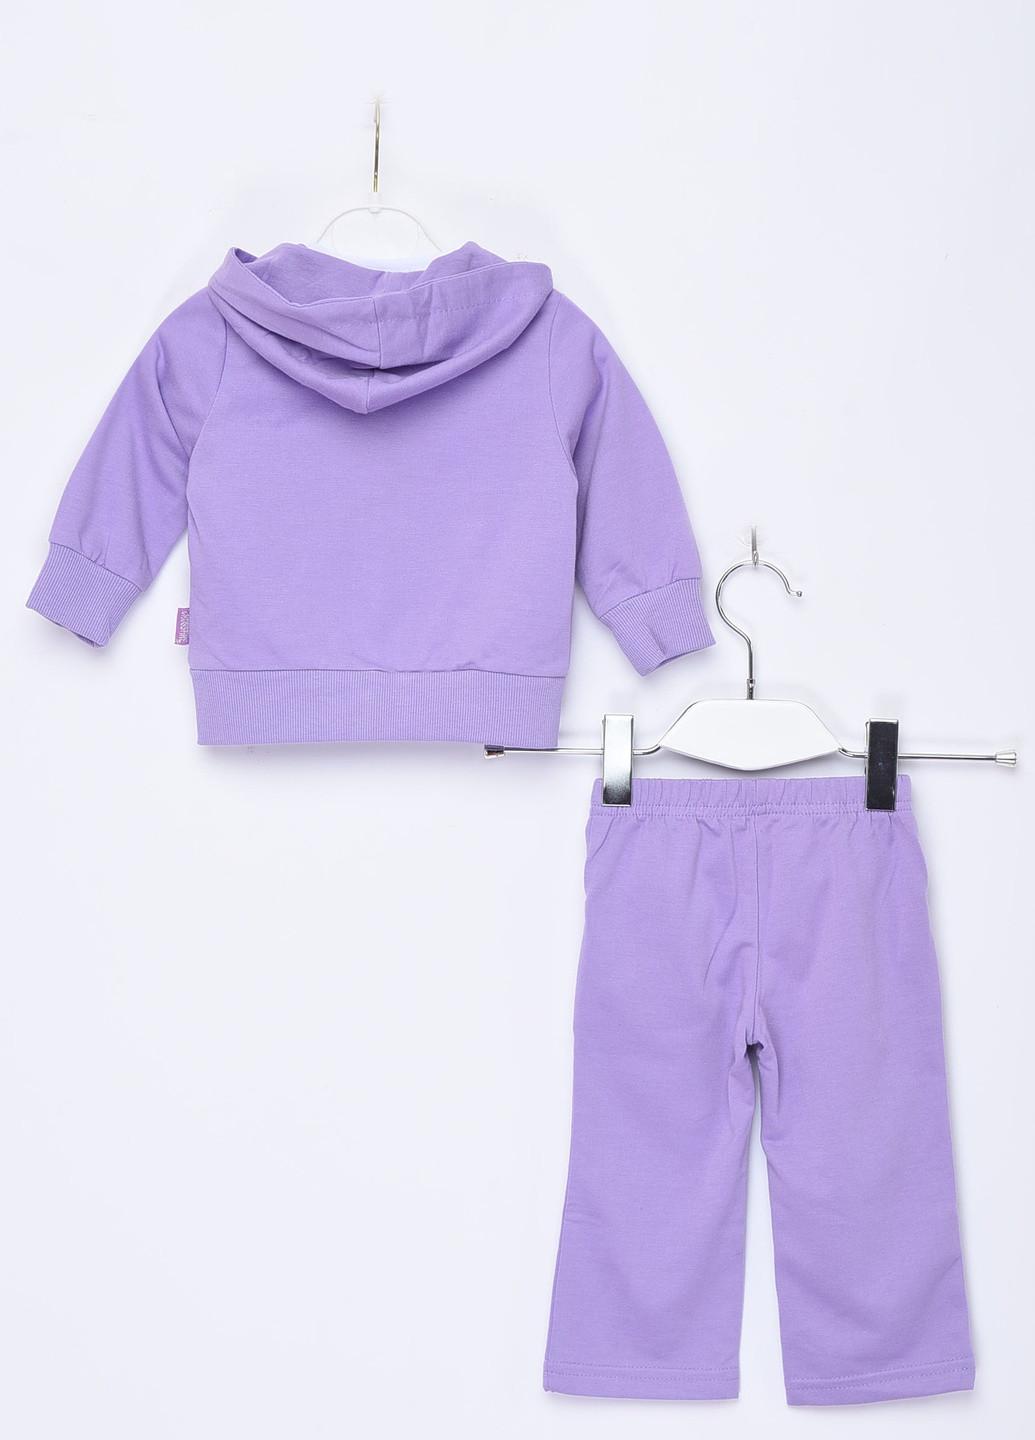 Сиреневый демисезонный спортивный костюм 3-ка детский для девочки с капюшоном сиреневого цвета Let's Shop